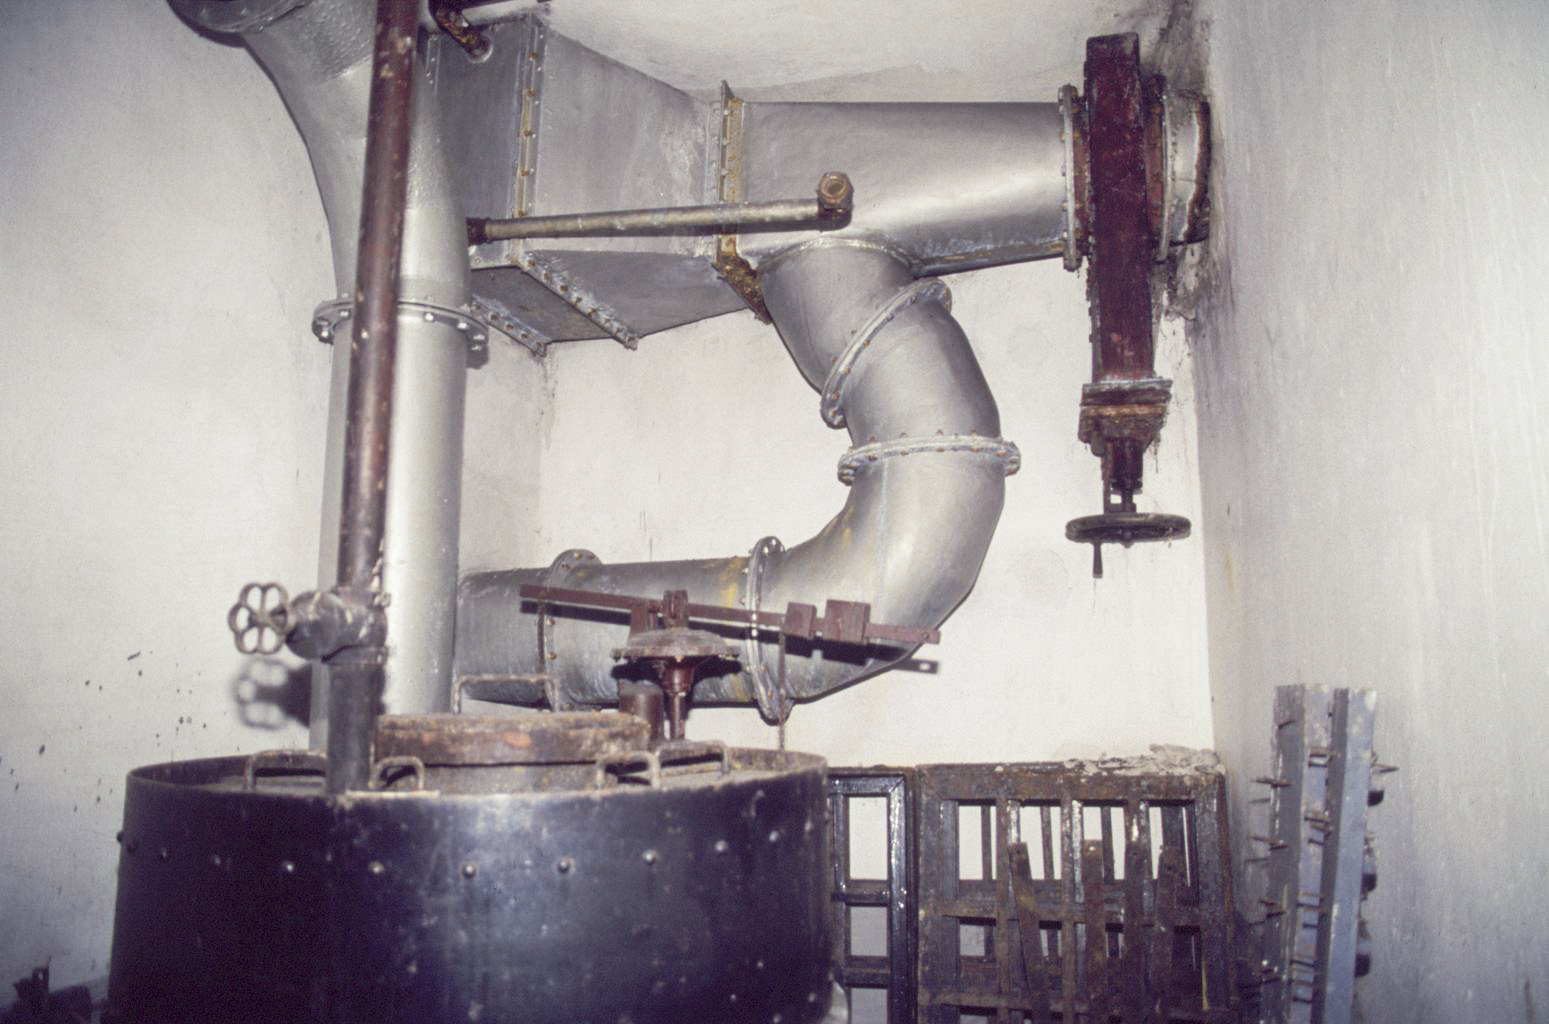 Ligne Maginot - BUCHHOLZBERG - (Abri) - En haut la batterie de chauffe alimenté par la chaudière. Une vanne sur la prise d'air extérieure et une dérivation donnant dans le couloir permet le fonctionnement en circuit fermé (recirculation de l'air intérieur dans la batterie de chauffe)
Visite fin 90 avec la BA901